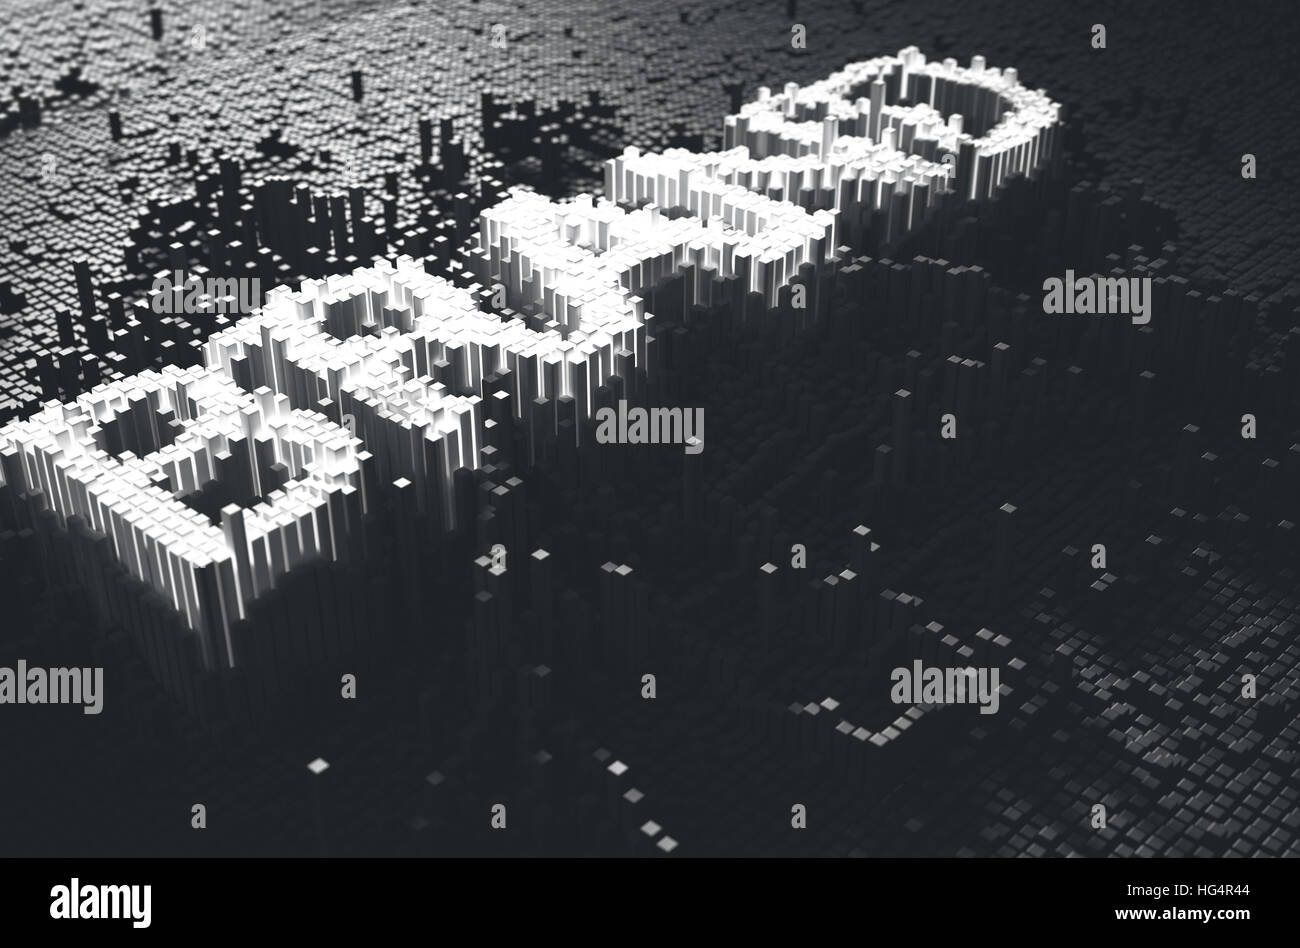 Ein 3D Rendering eines mikroskopischen Closeup-Konzepts der kleine Würfel in einem zufälligen Layout, die Form aufbauen beleuchtet die Wortmarke Stockfoto